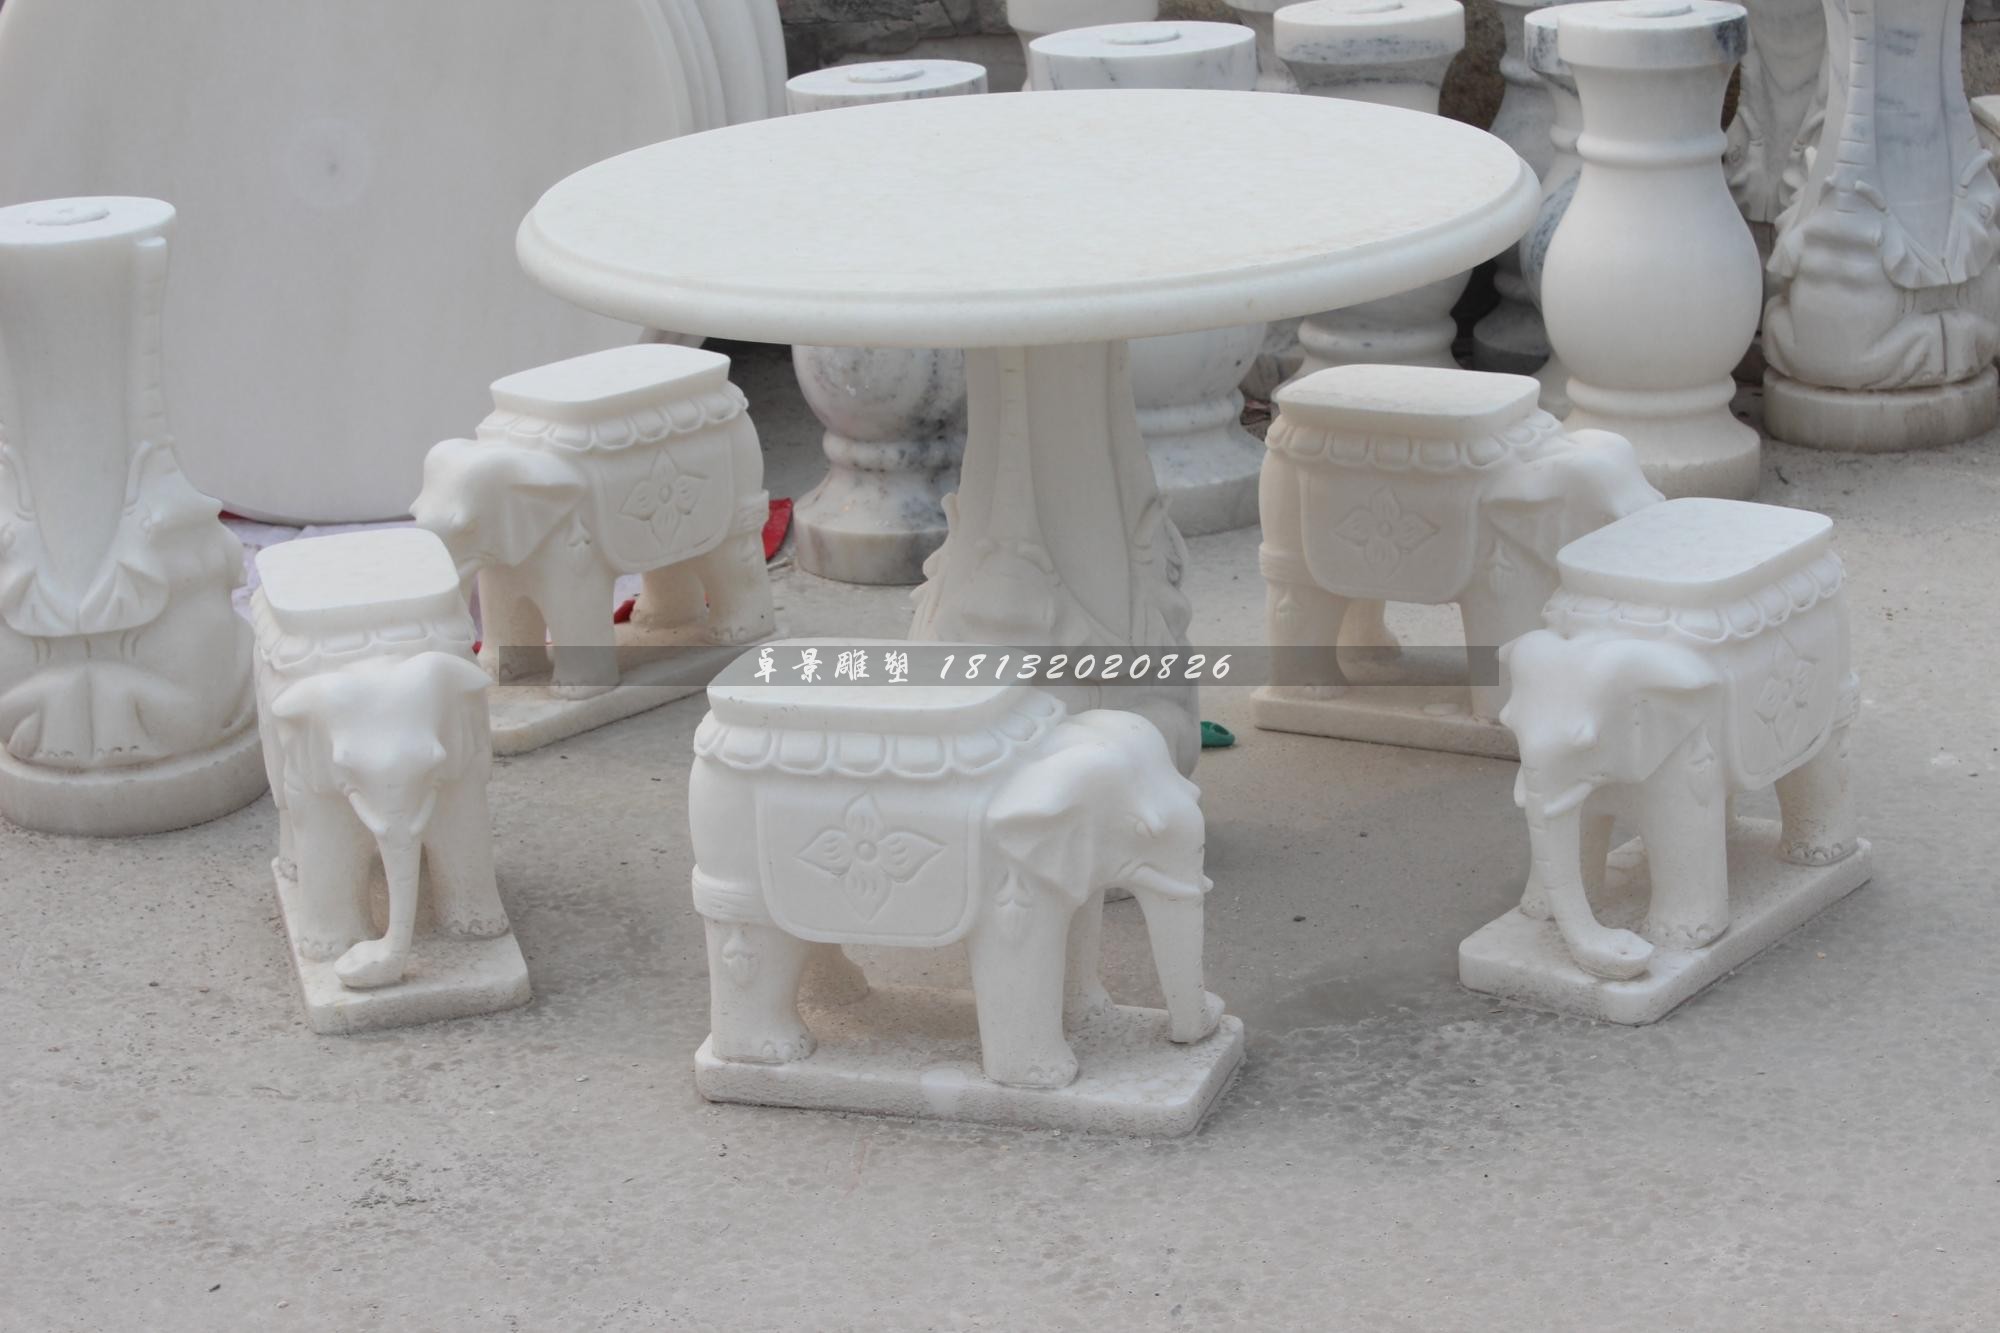 大象桌凳石雕汉白玉石桌石凳 (1).jpg